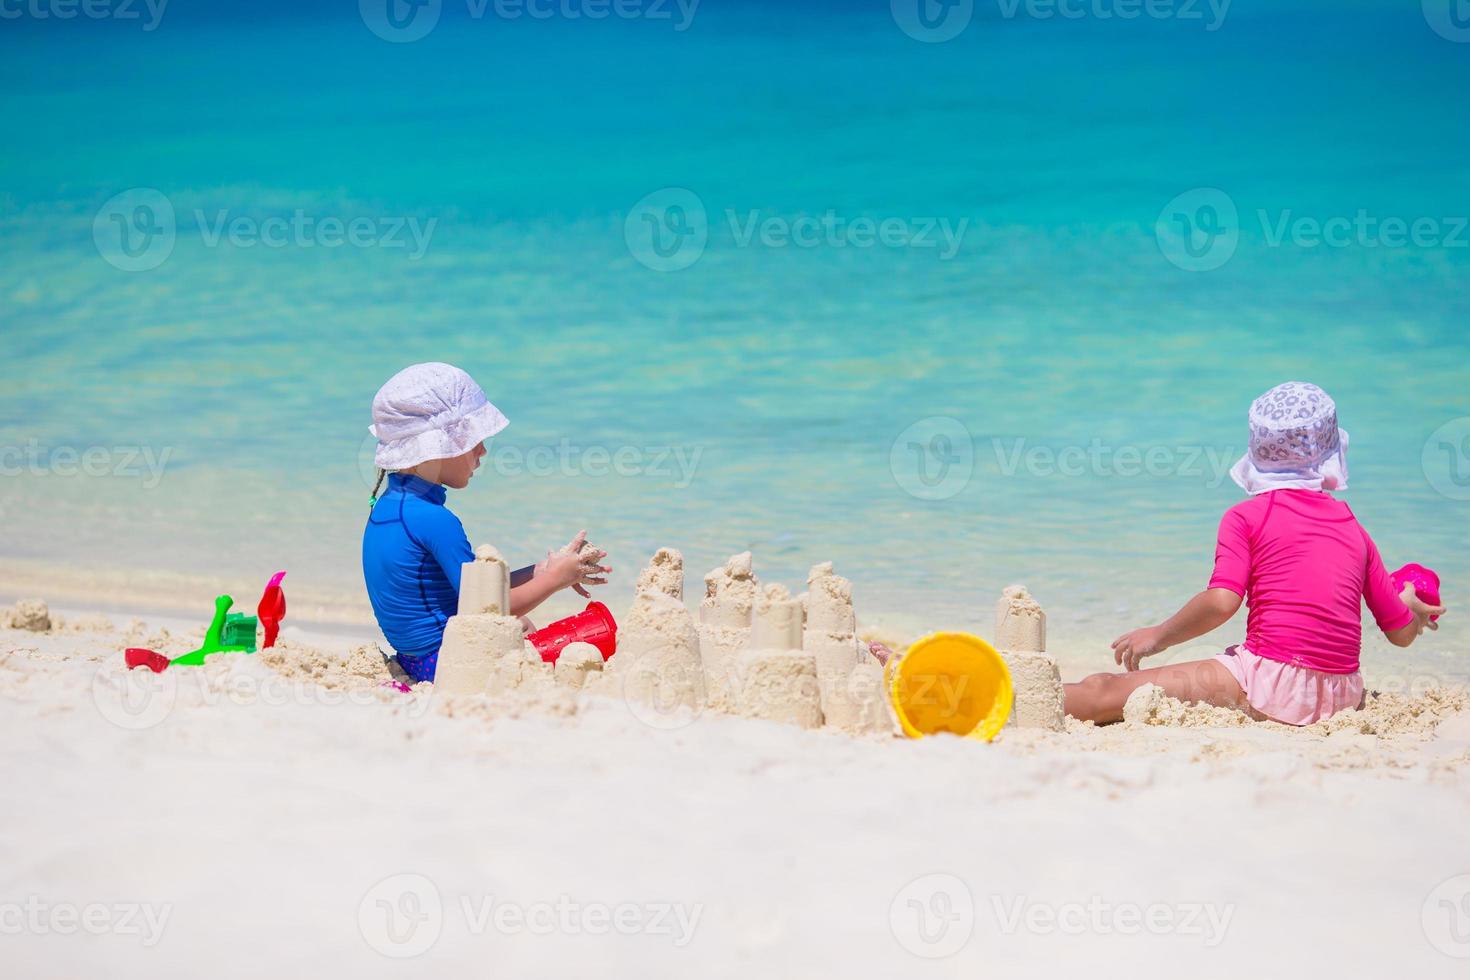 adorables niñas jugando con juguetes de playa durante las vacaciones tropicales foto